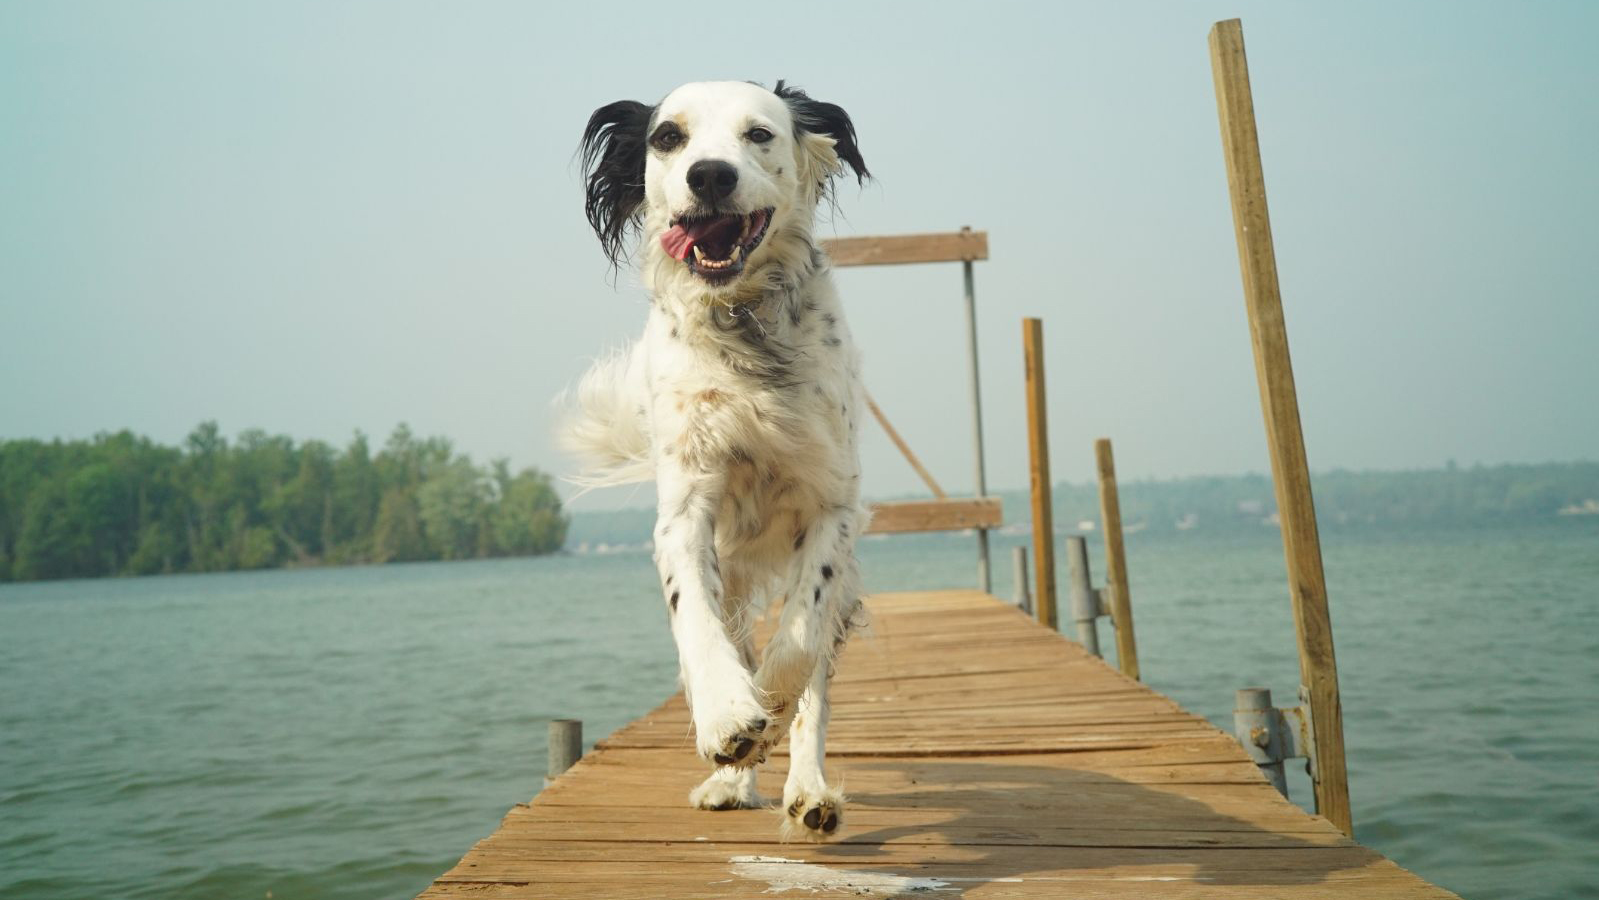 A dog running down a dock at a lake.